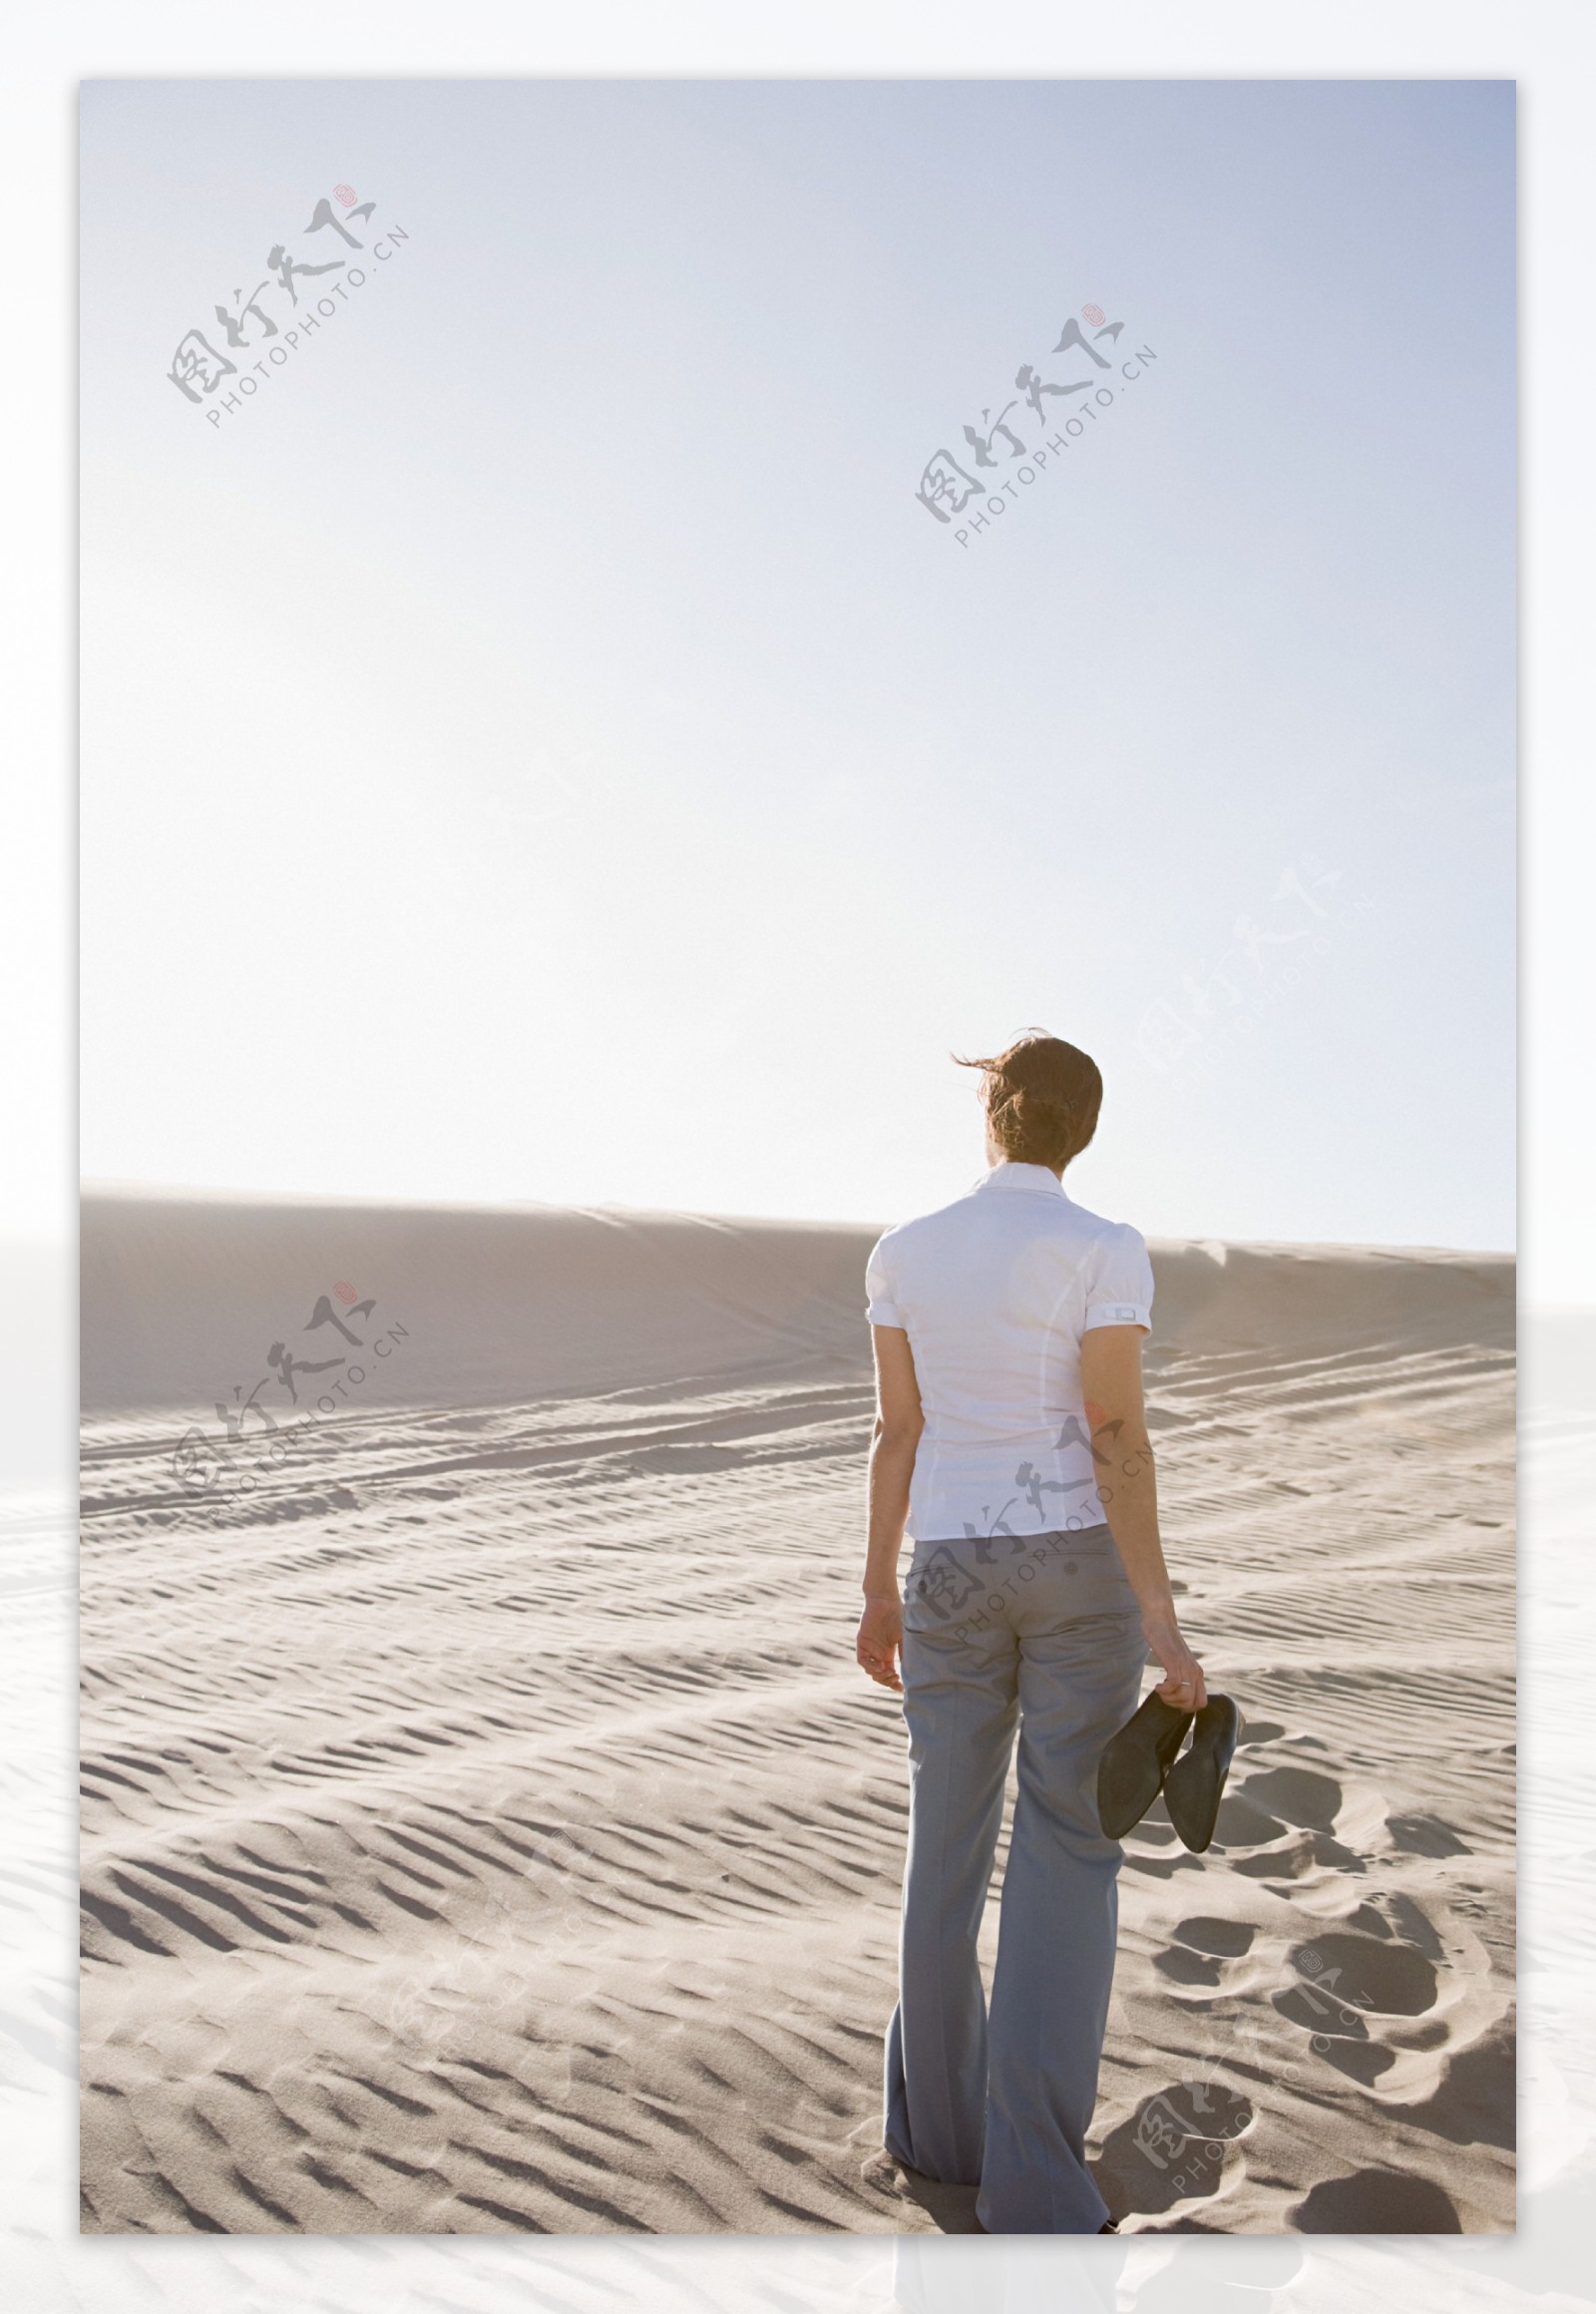 光脚走在沙漠中的女人背影图片